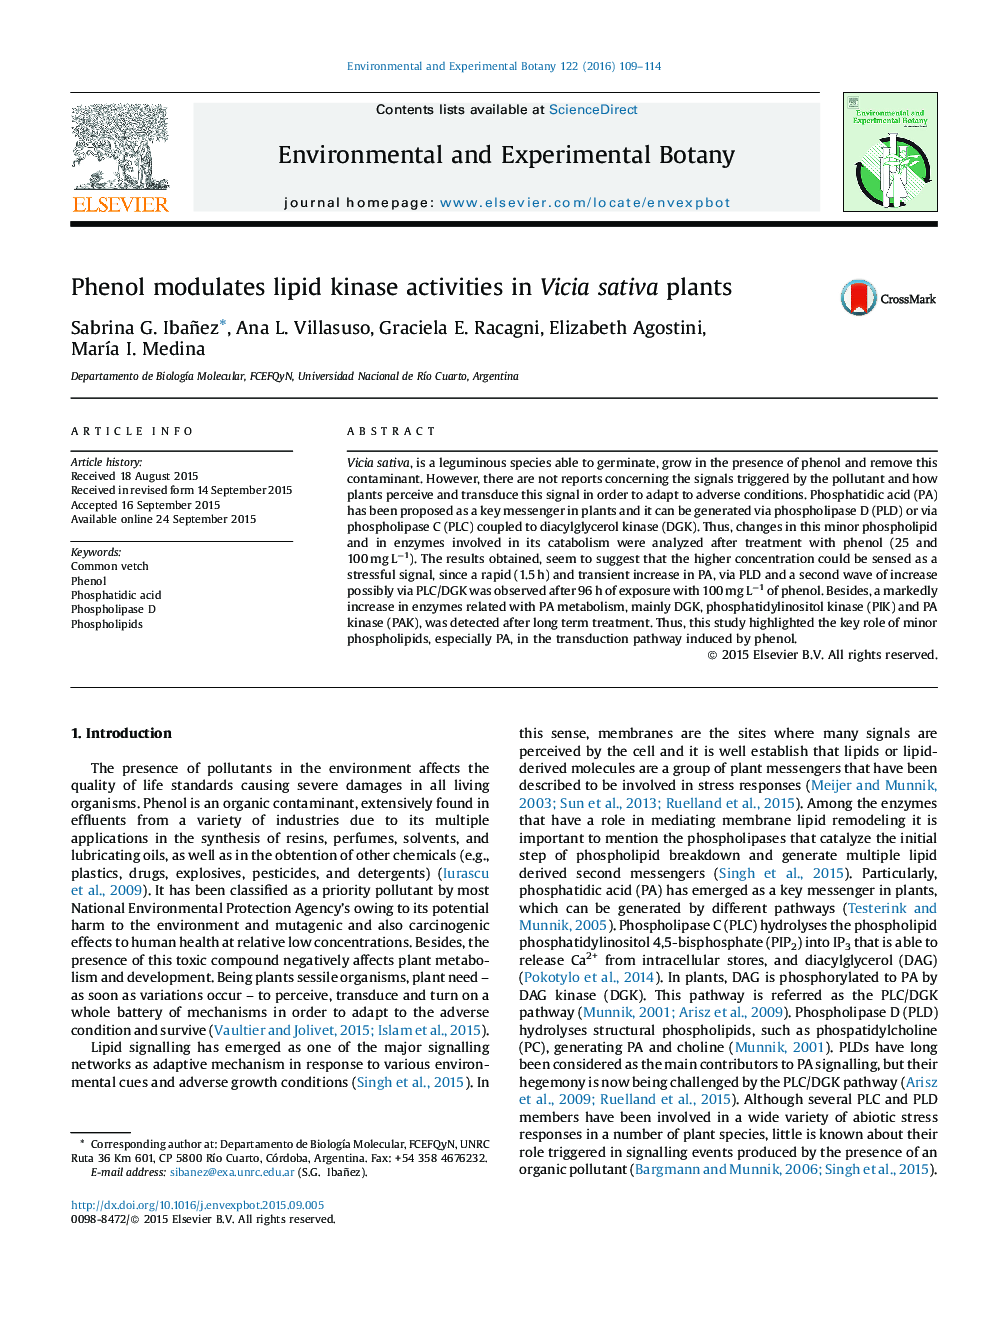 Phenol modulates lipid kinase activities in Vicia sativa plants